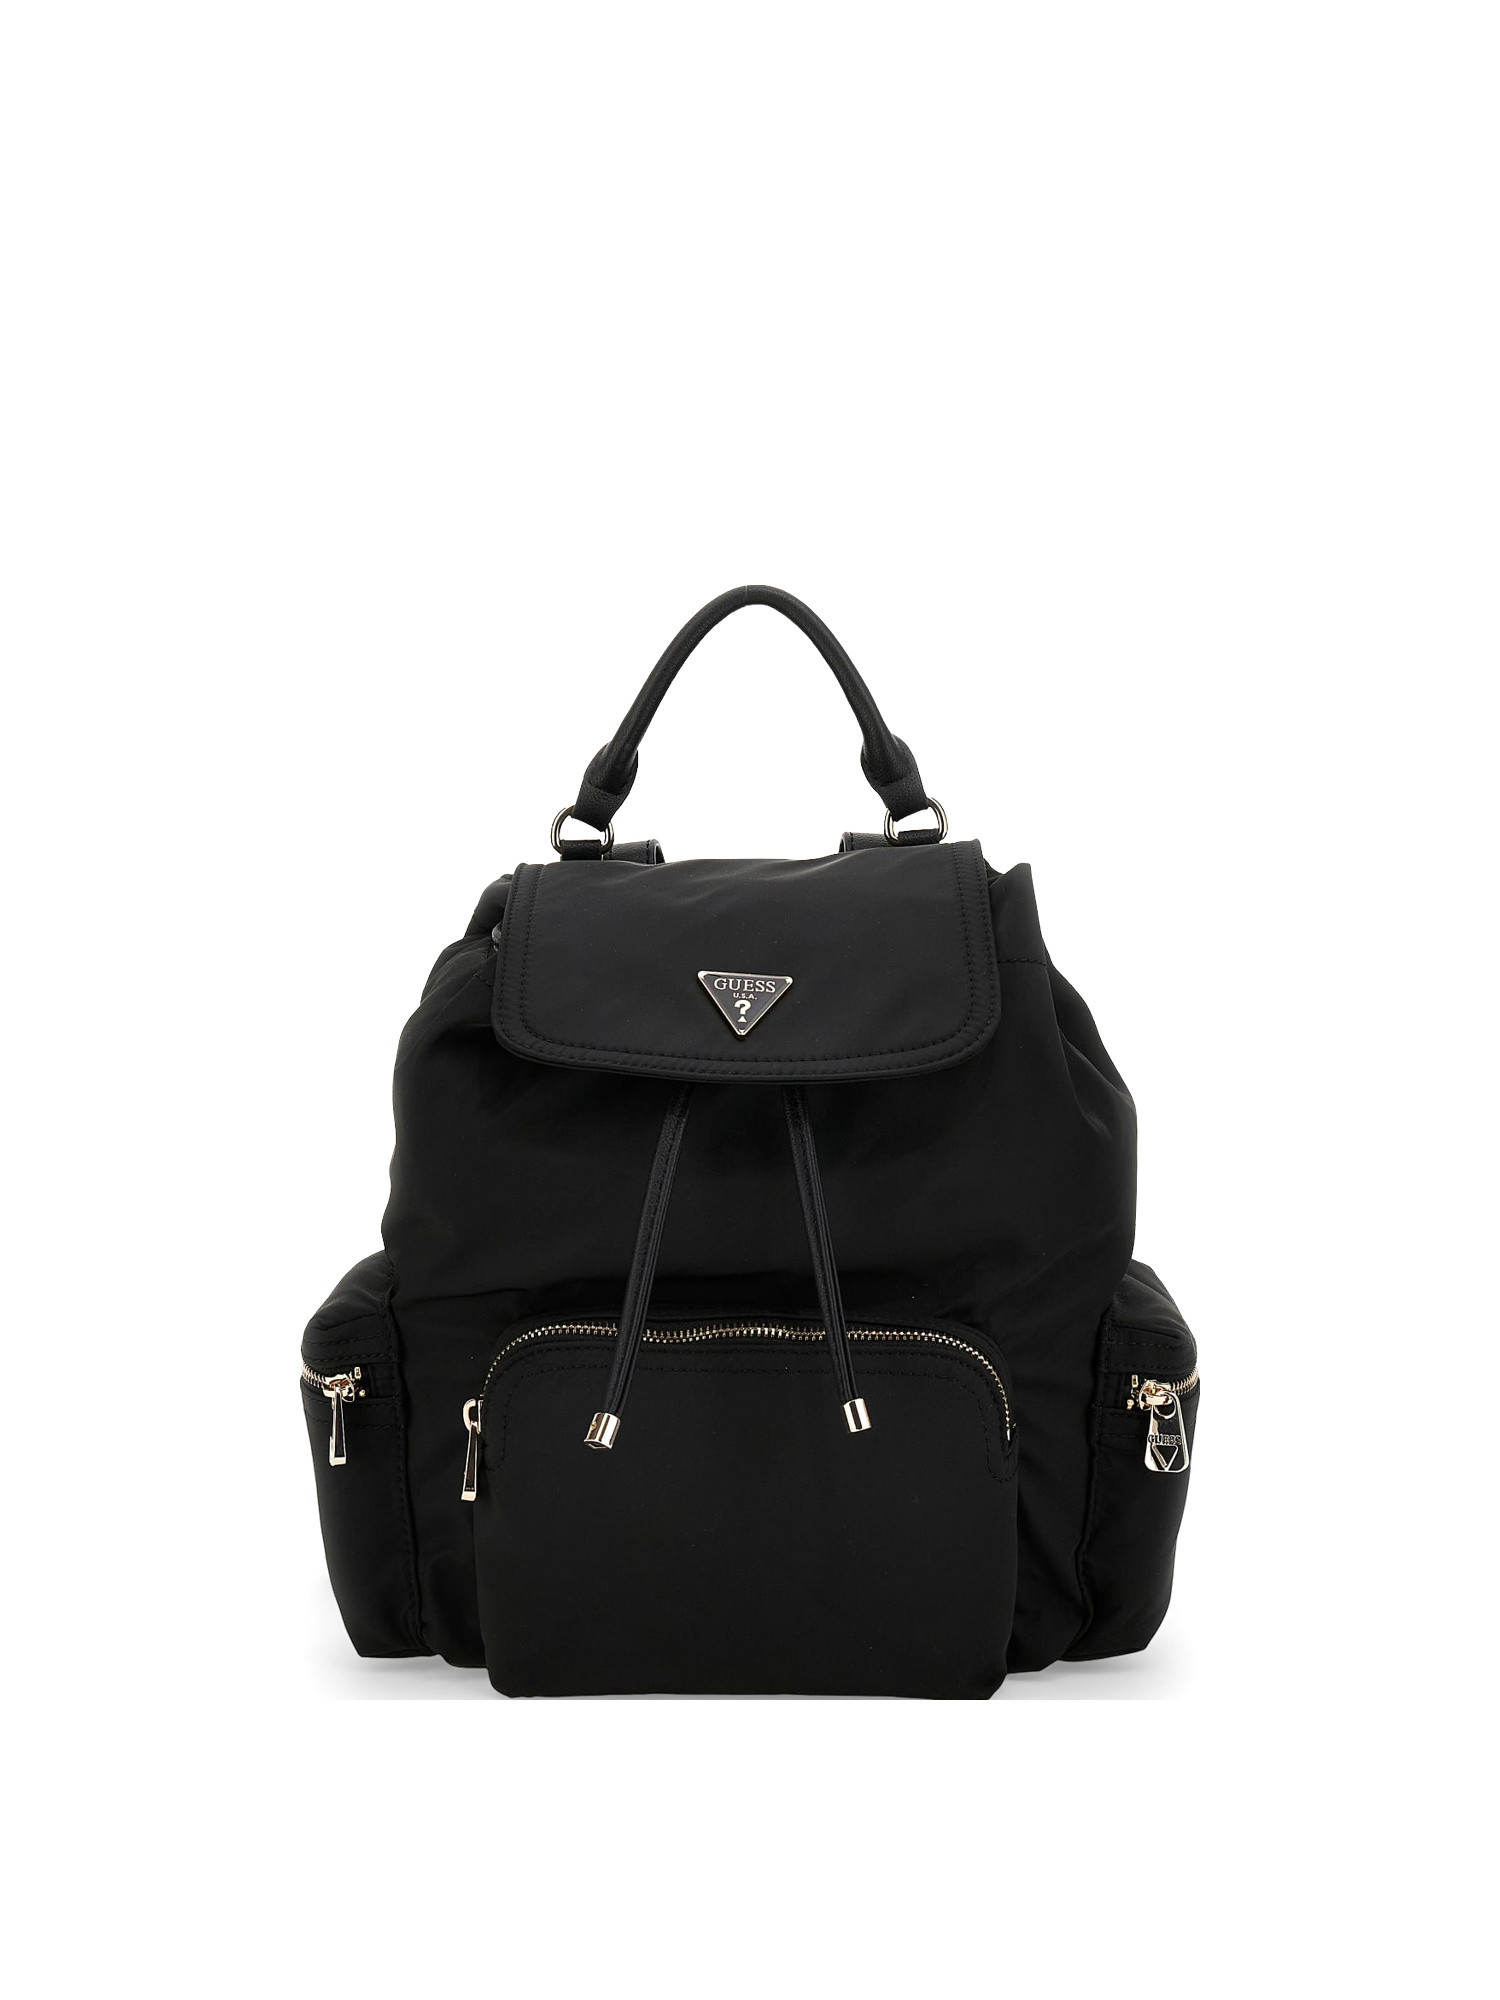 Guess - Gem eco backpack, Black, large image number 0